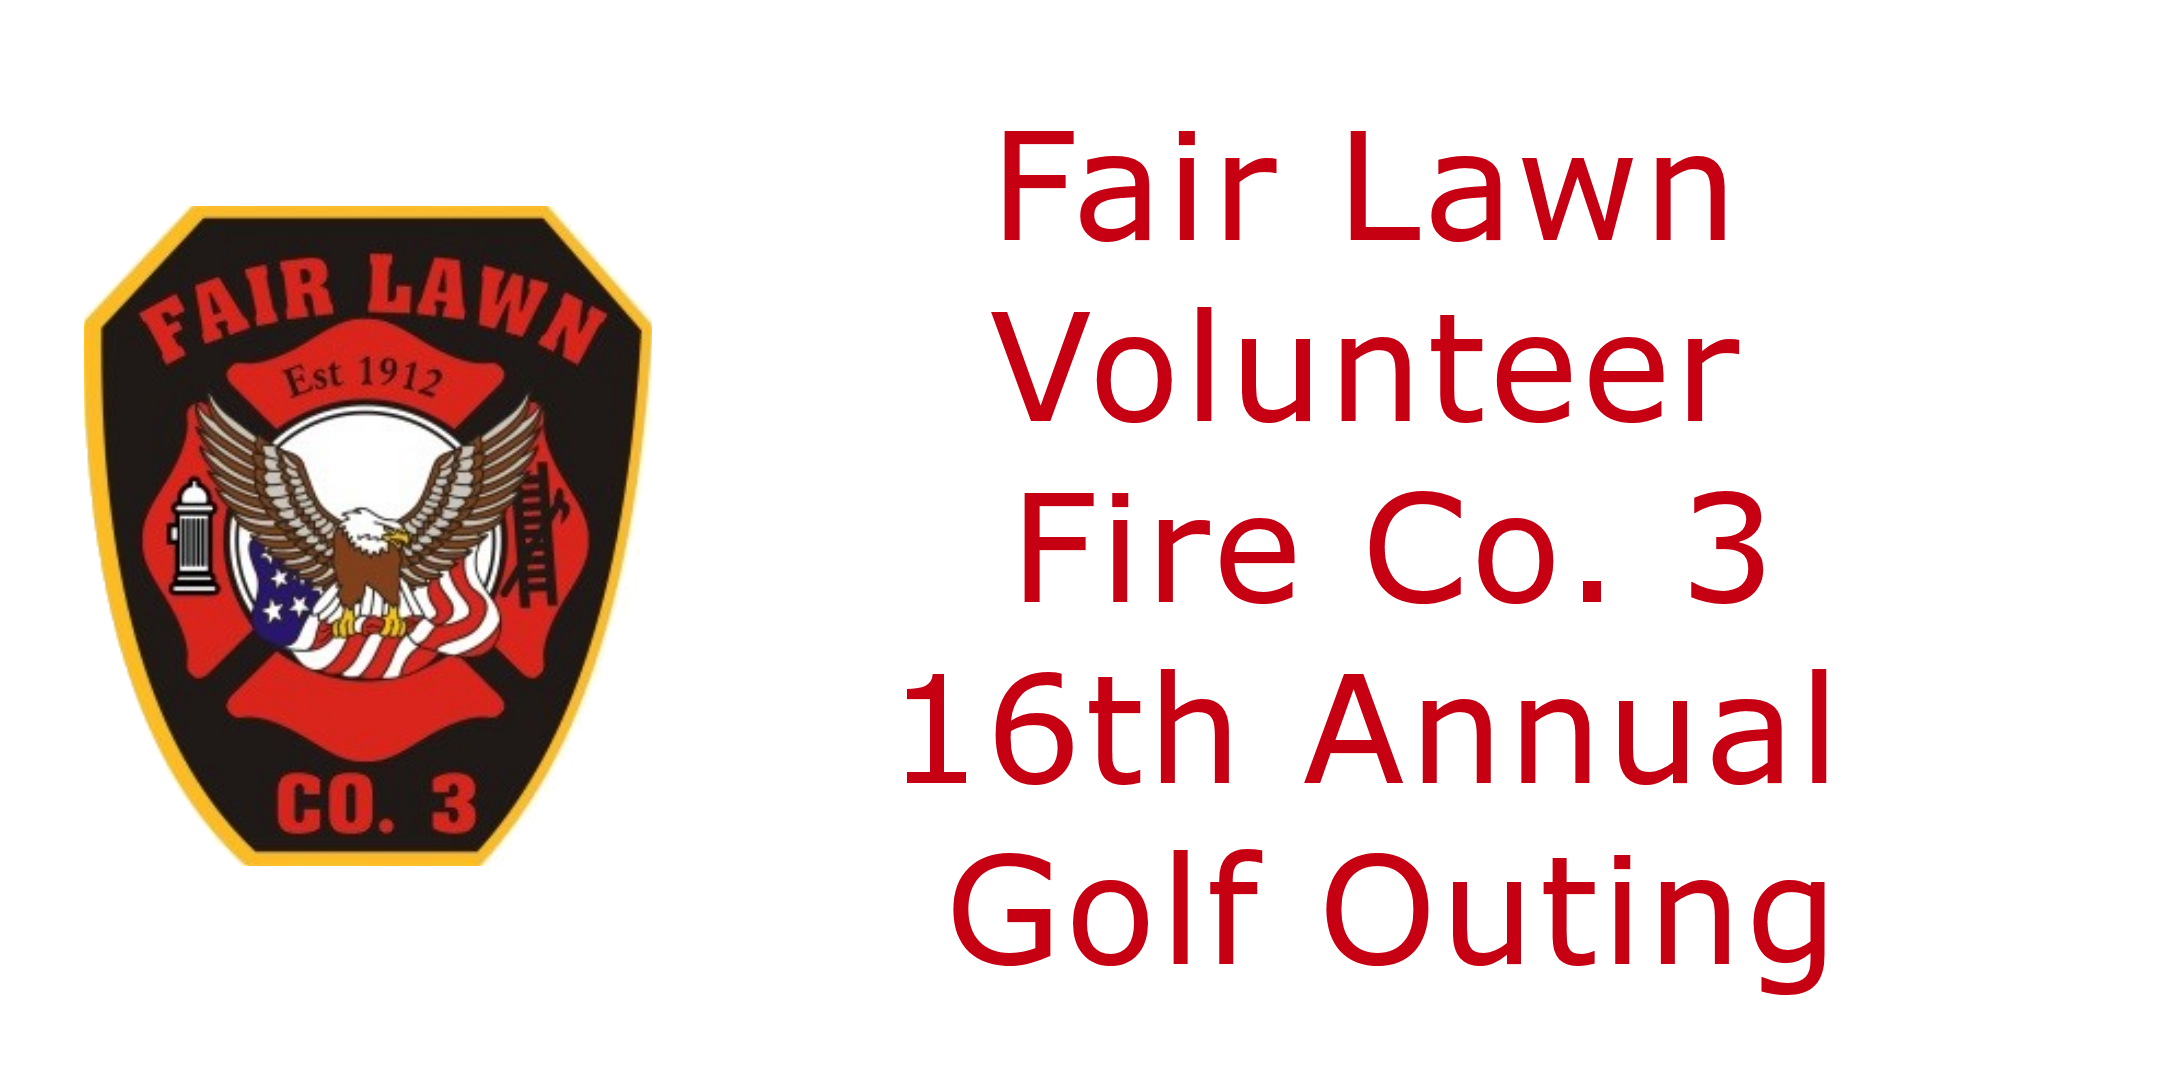 Fair Lawn Volunteer Fire Co. #3 16th Annual Golf Outing